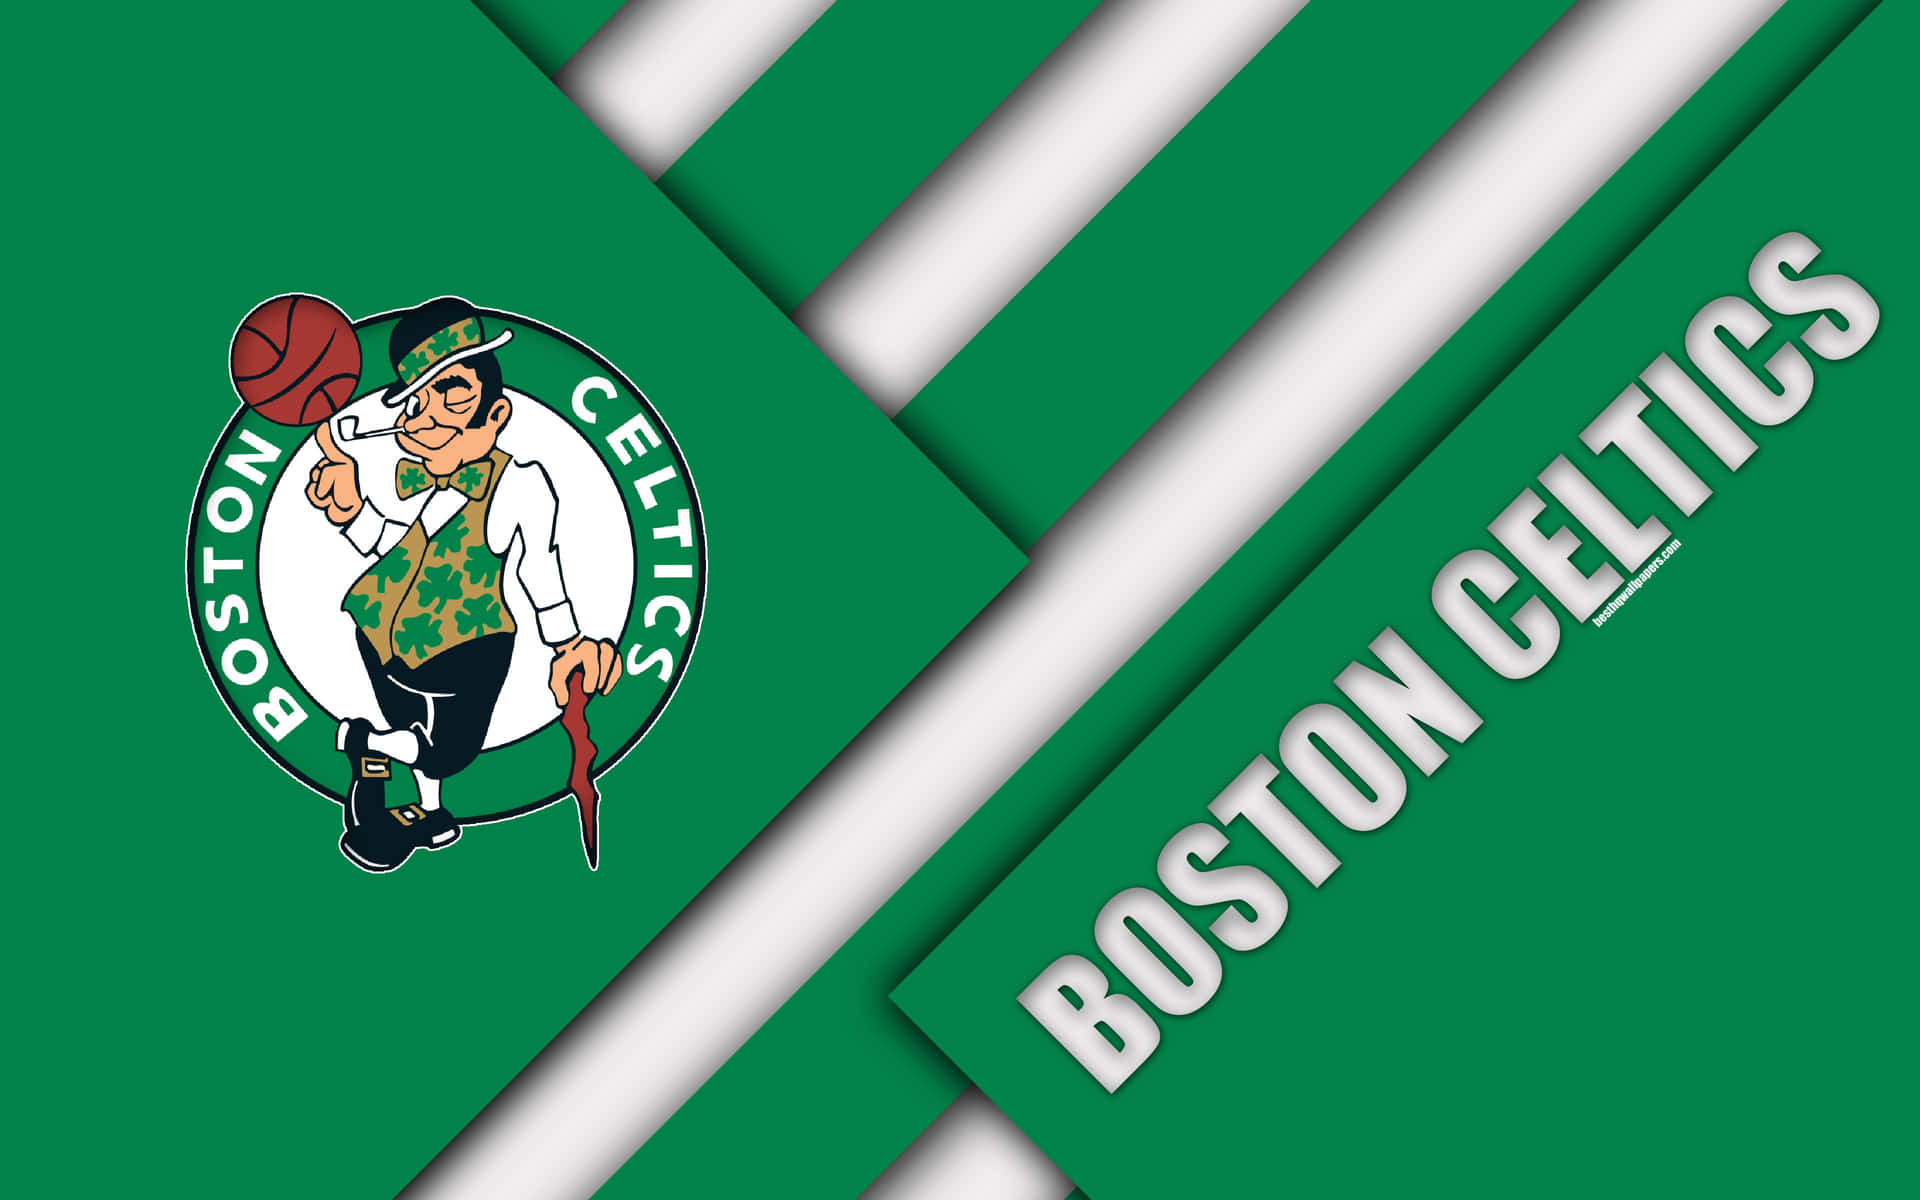 Fondode Pantalla Con Logotipo De Los Celtics En Degradado Verde Y Blanco. Fondo de pantalla